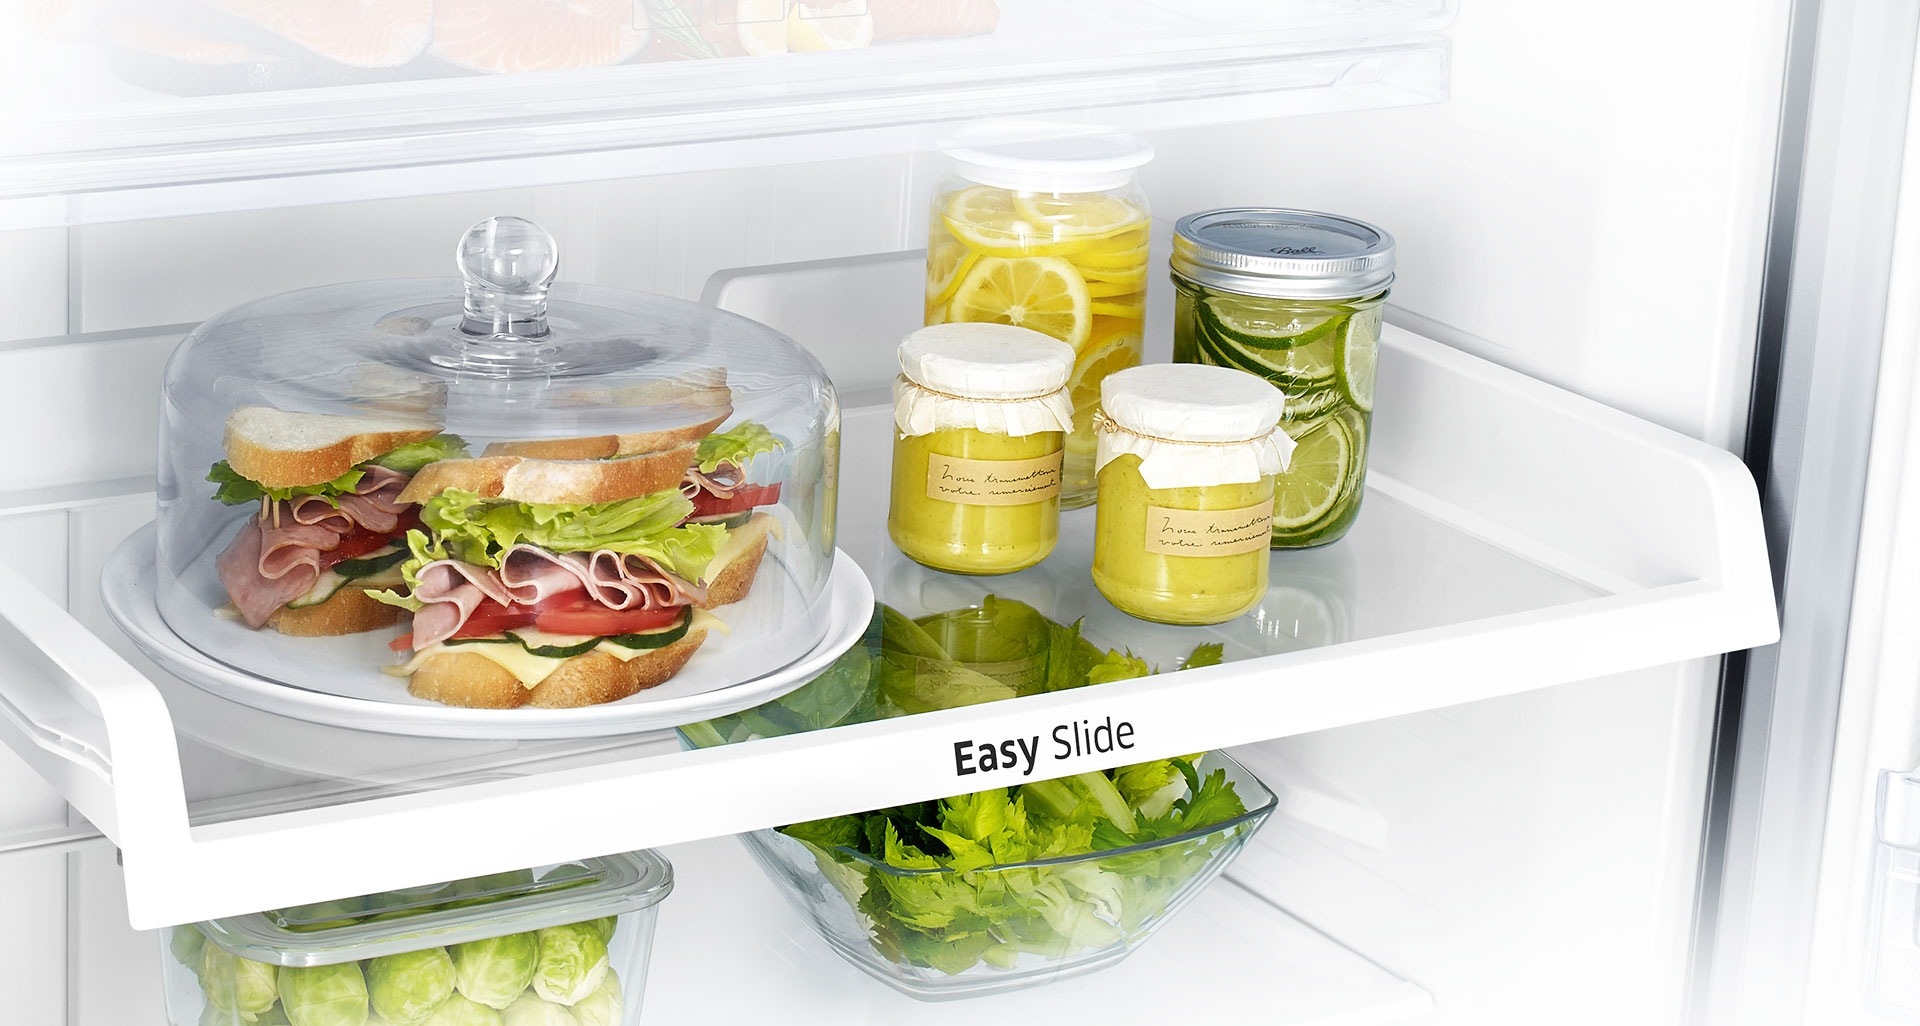 دسترسی سریع و آسان به مواد غذایی ته یخچال